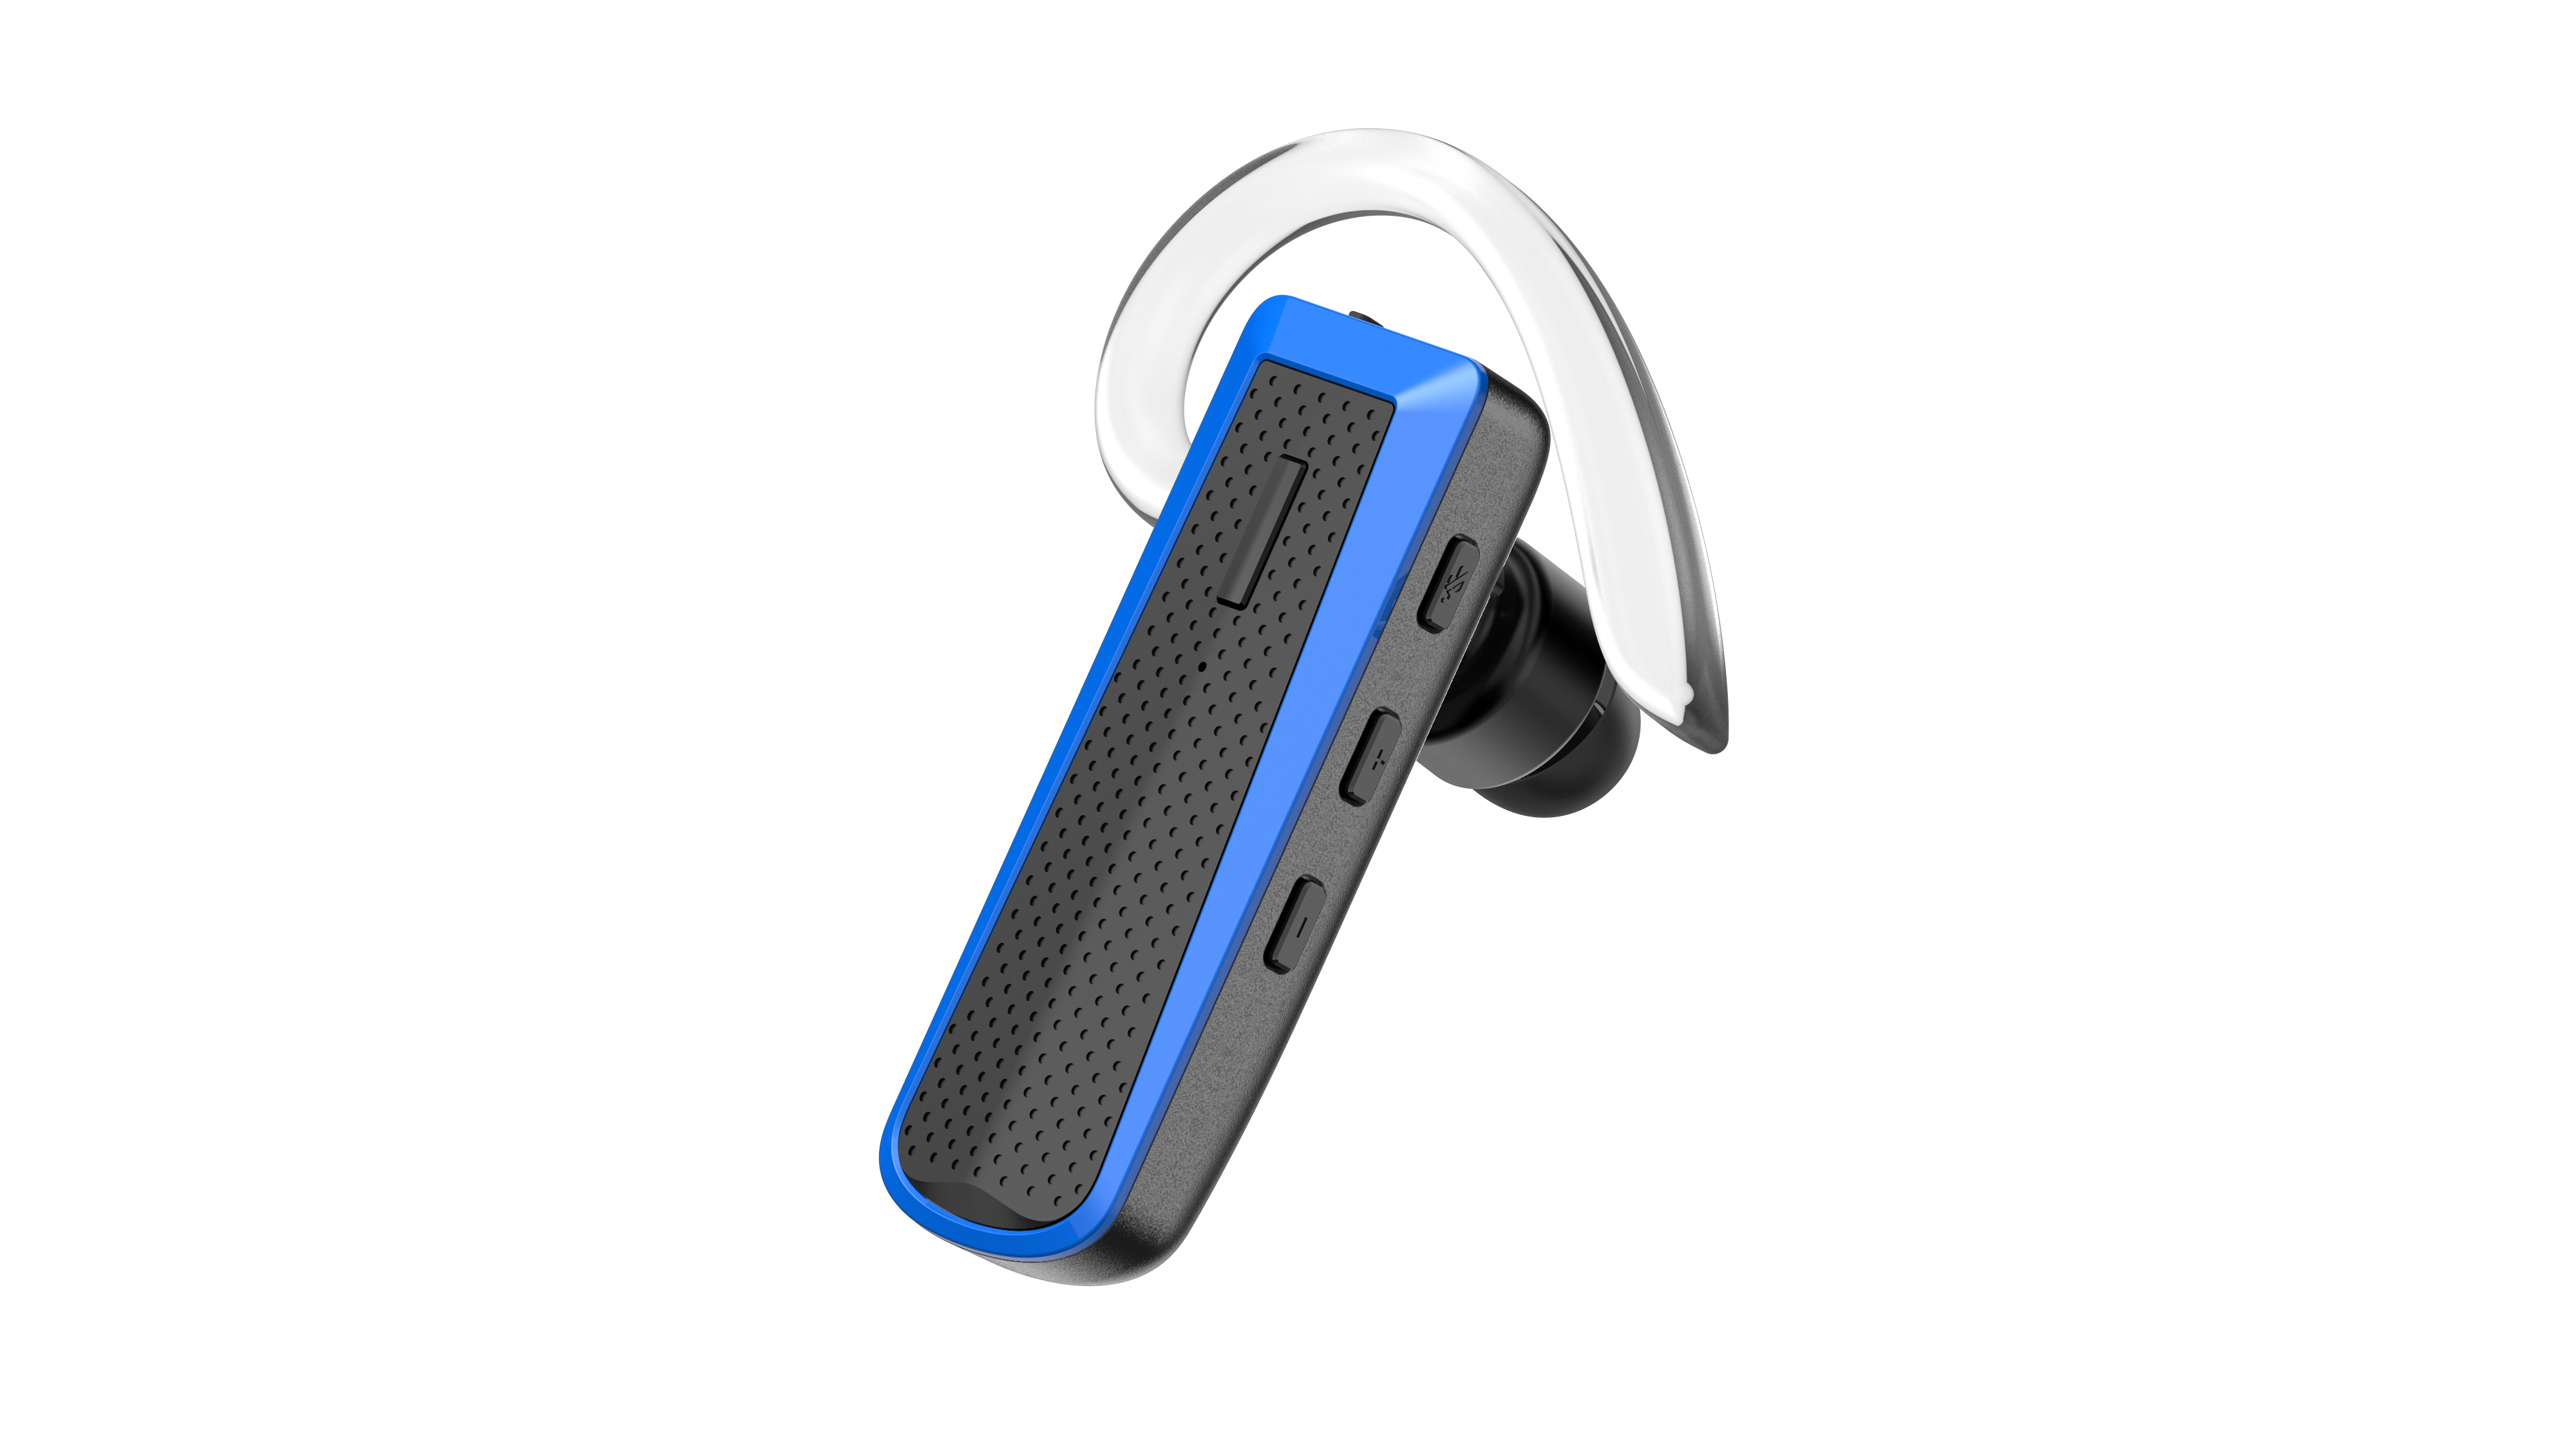 Headset HAPPYSET In-ear Bluetooth Bluetooth Blau Blue,